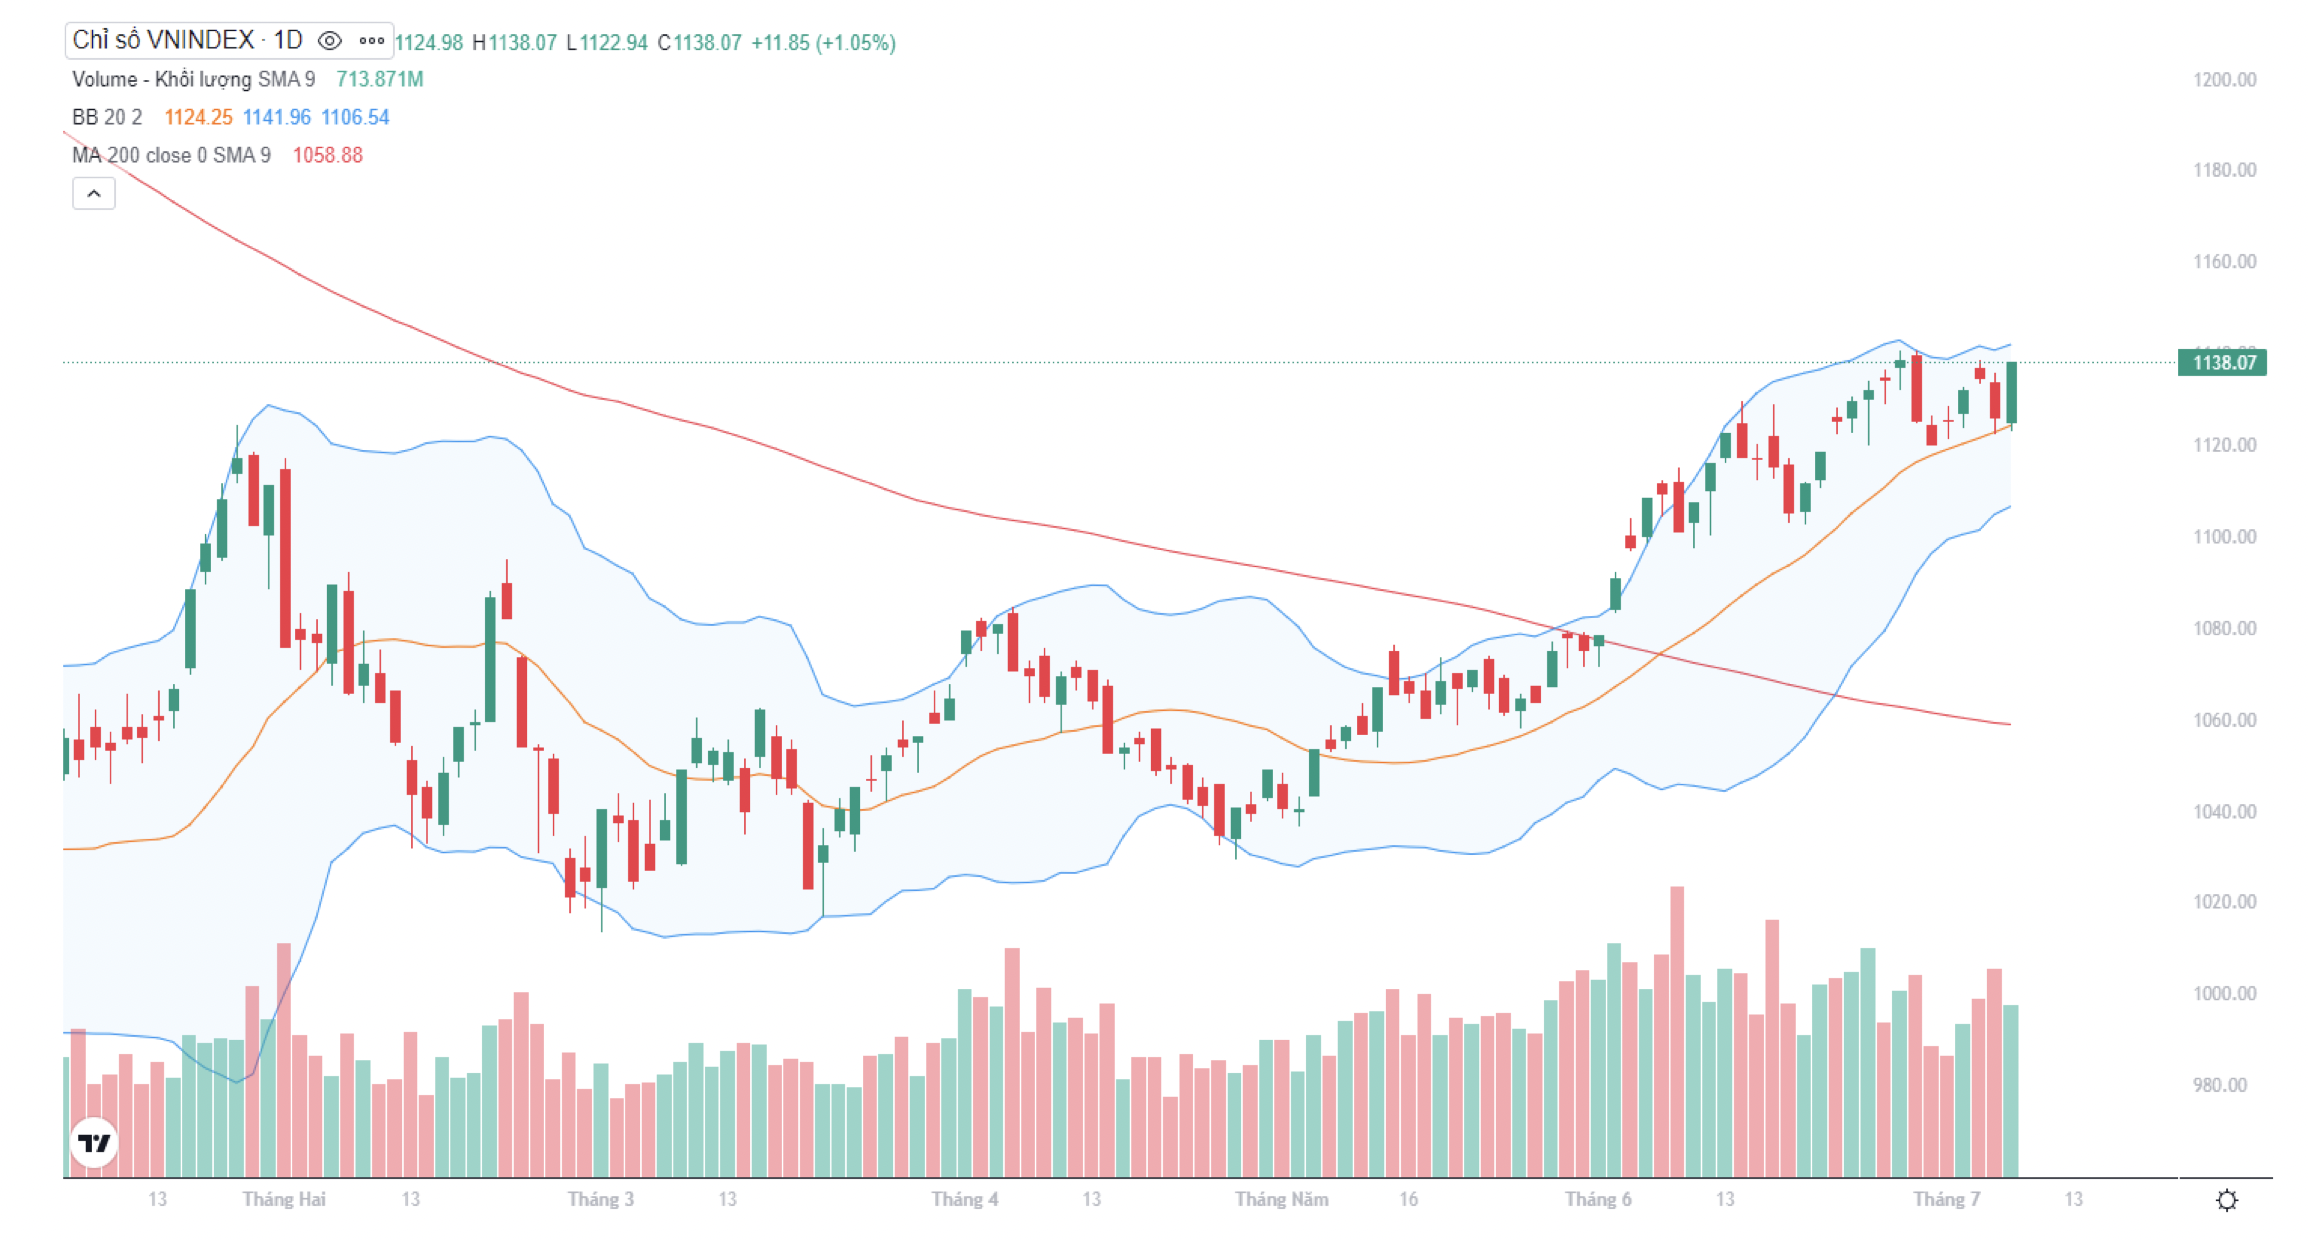 VN-Index hình thành nến xanh tăng điểm vào phiên cuối tuần, tiếp cận lại khu vực đỉnh 1.140 điểm. Ảnh: tradingview